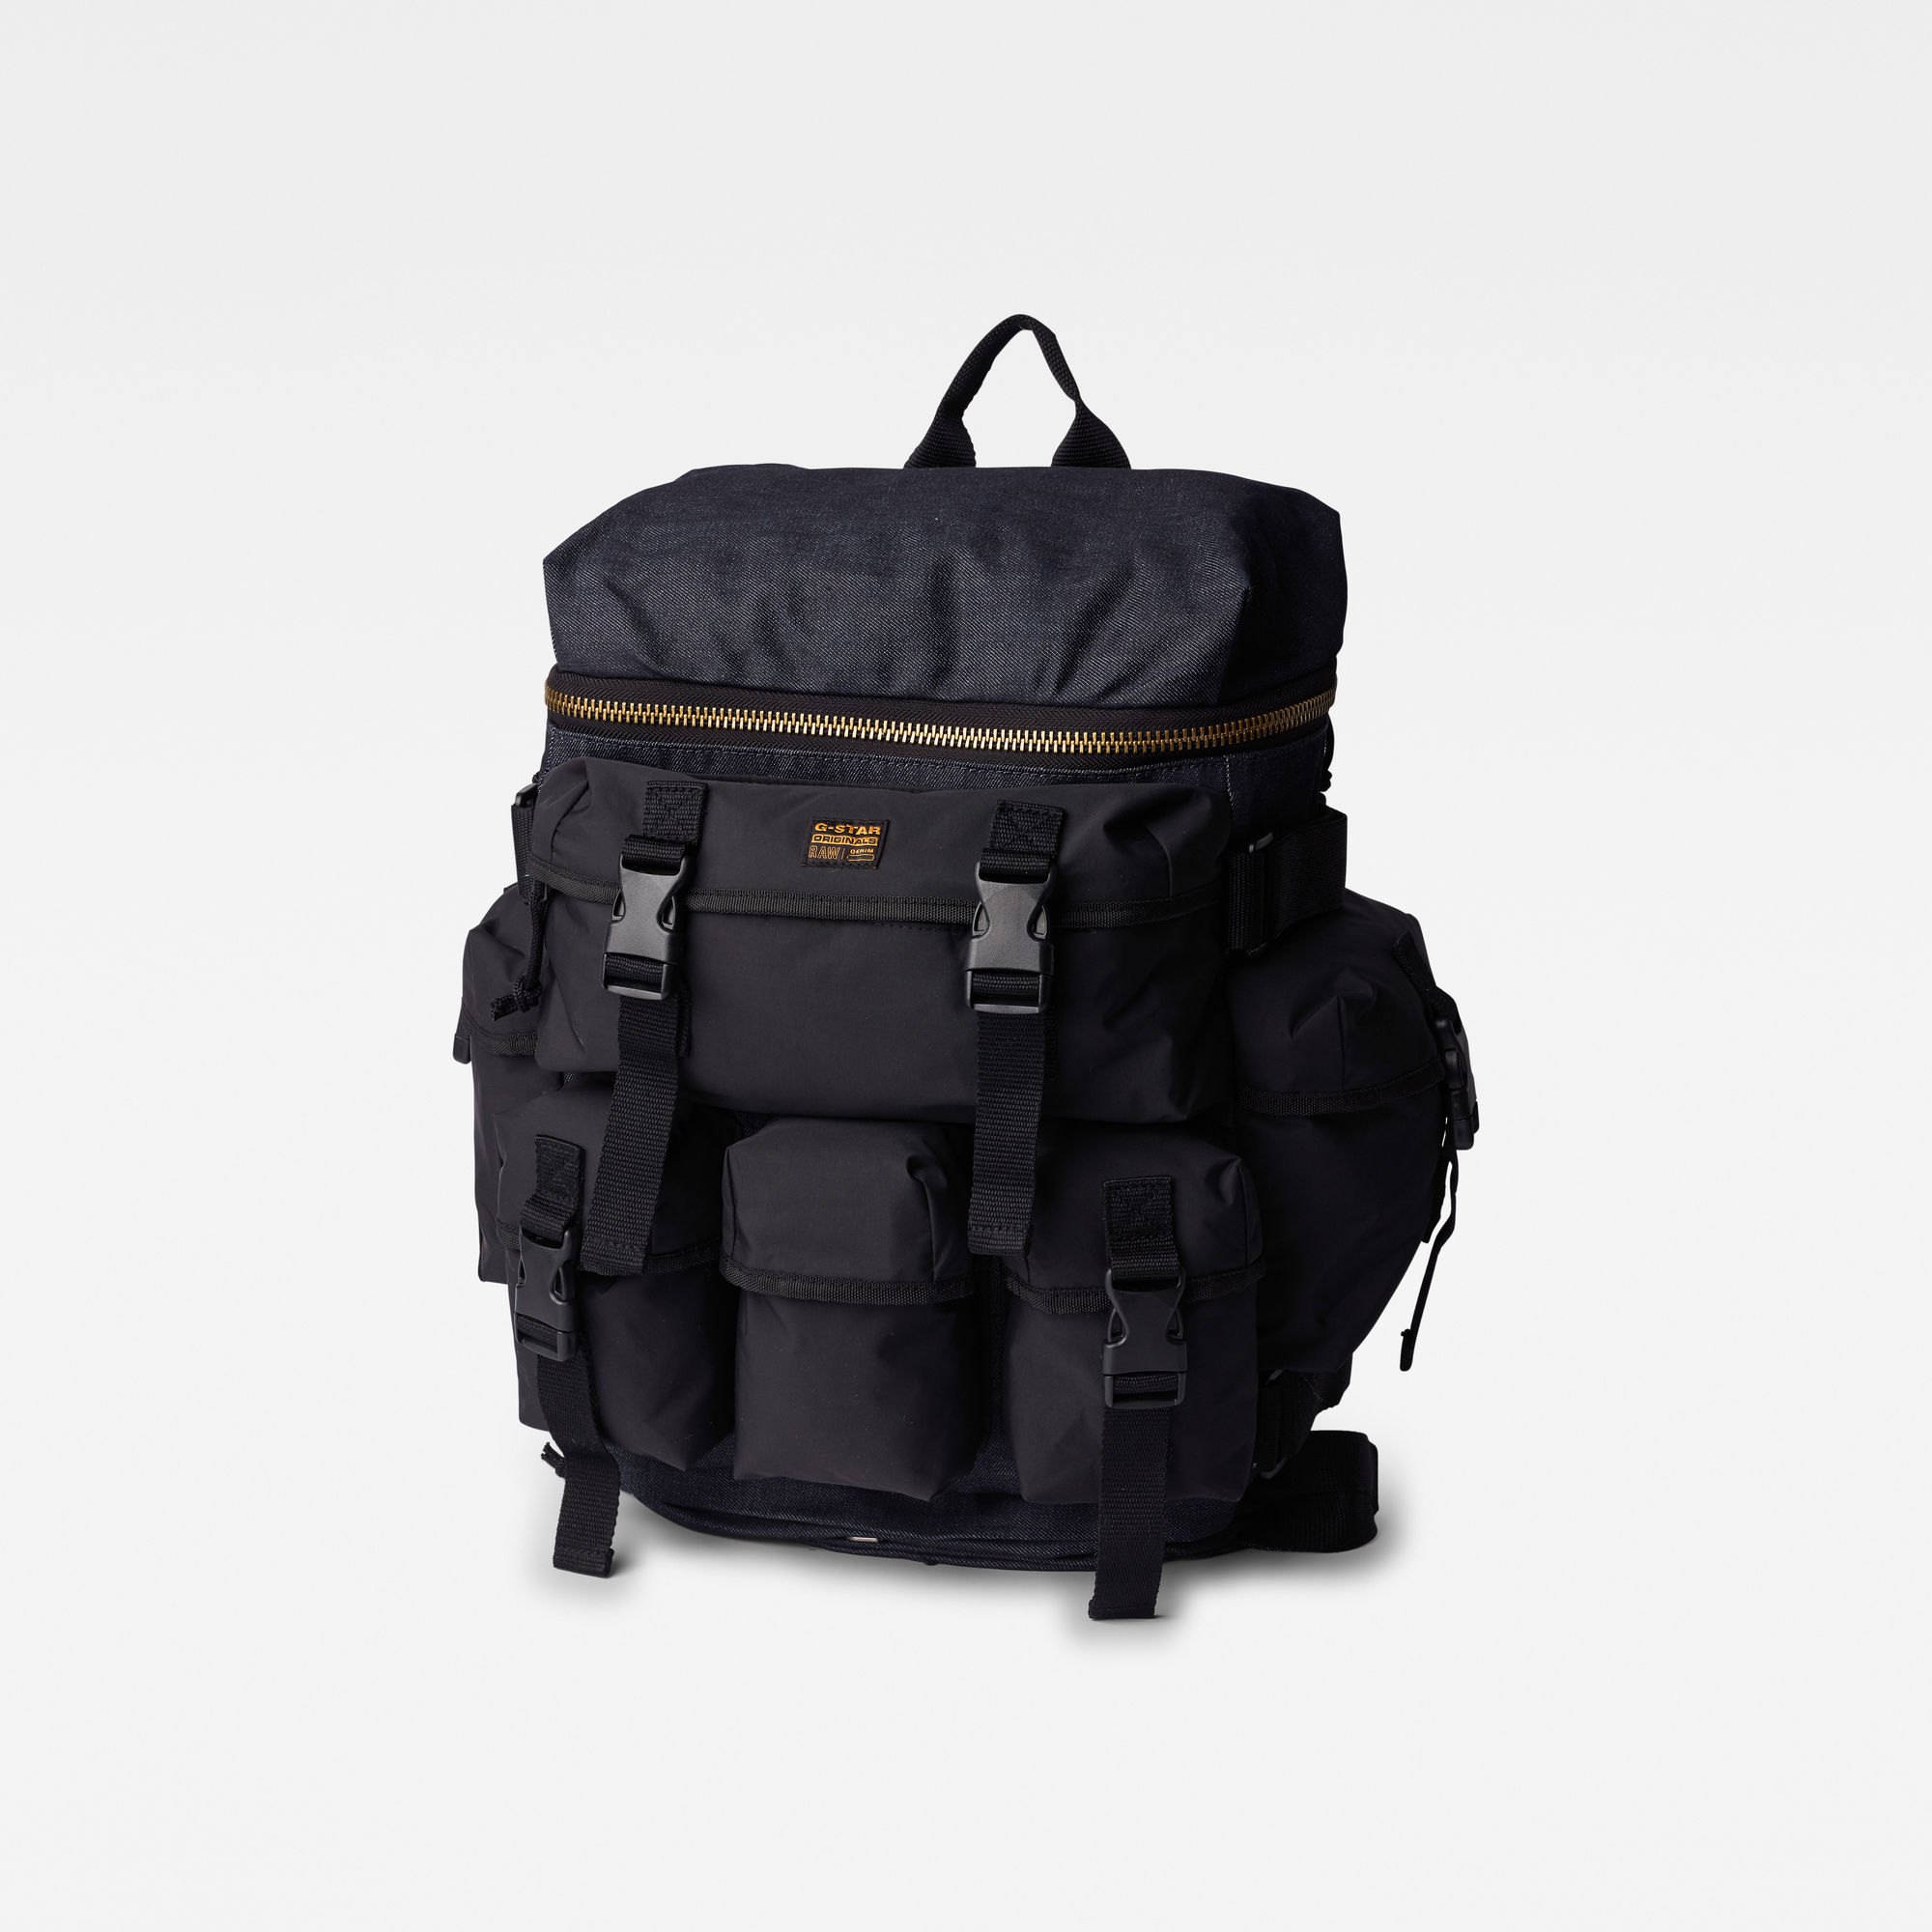 Detachable backpack